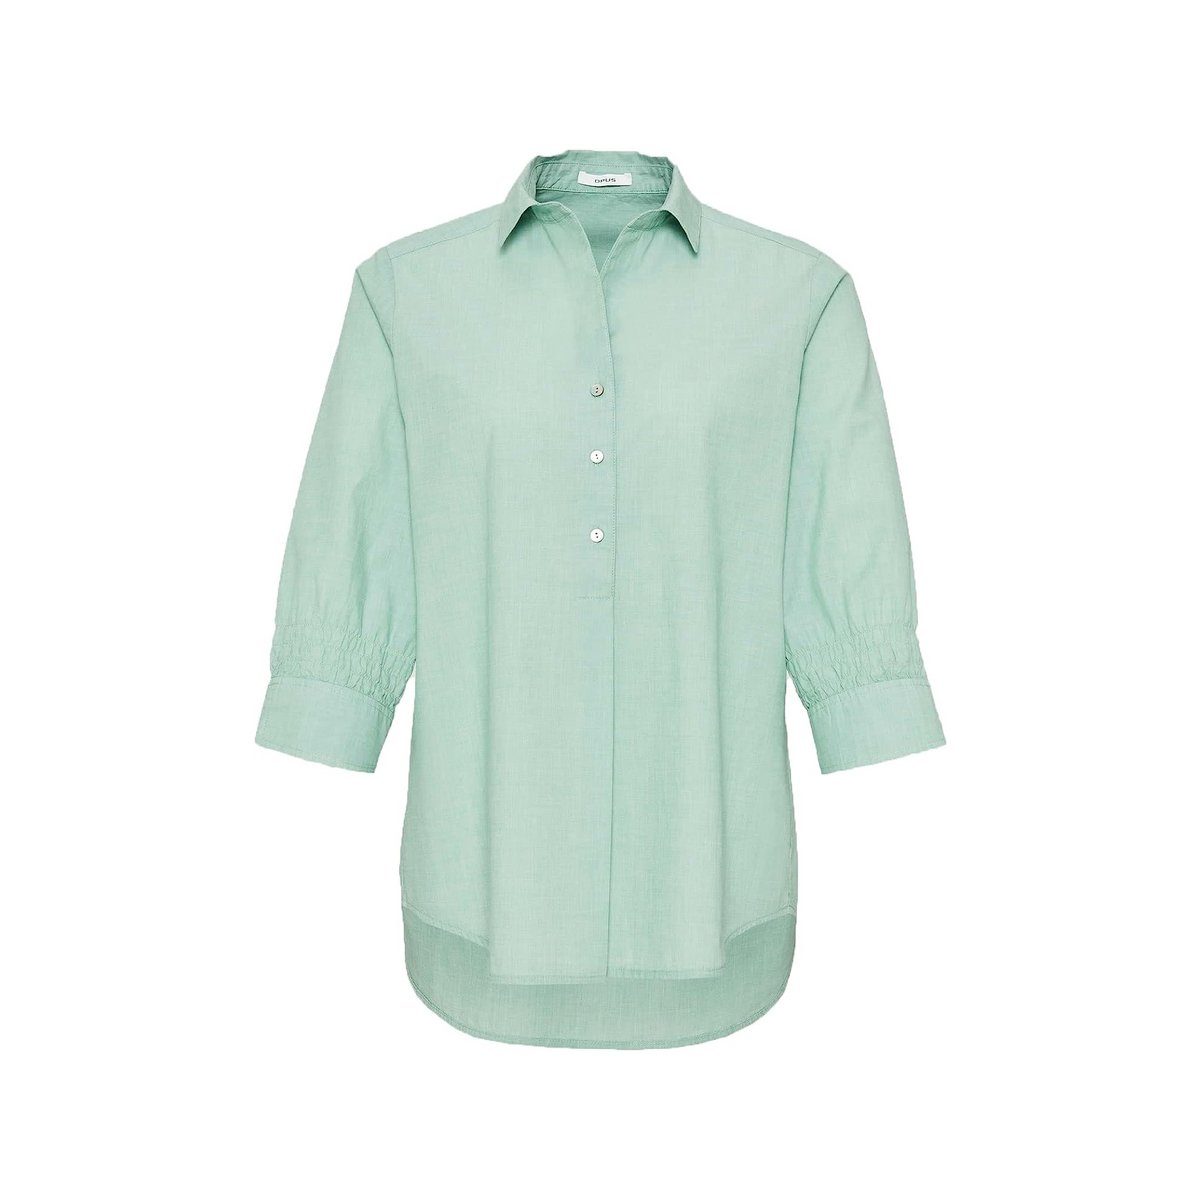 Grüne someday Blusen für Damen online kaufen | OTTO | T-Shirts